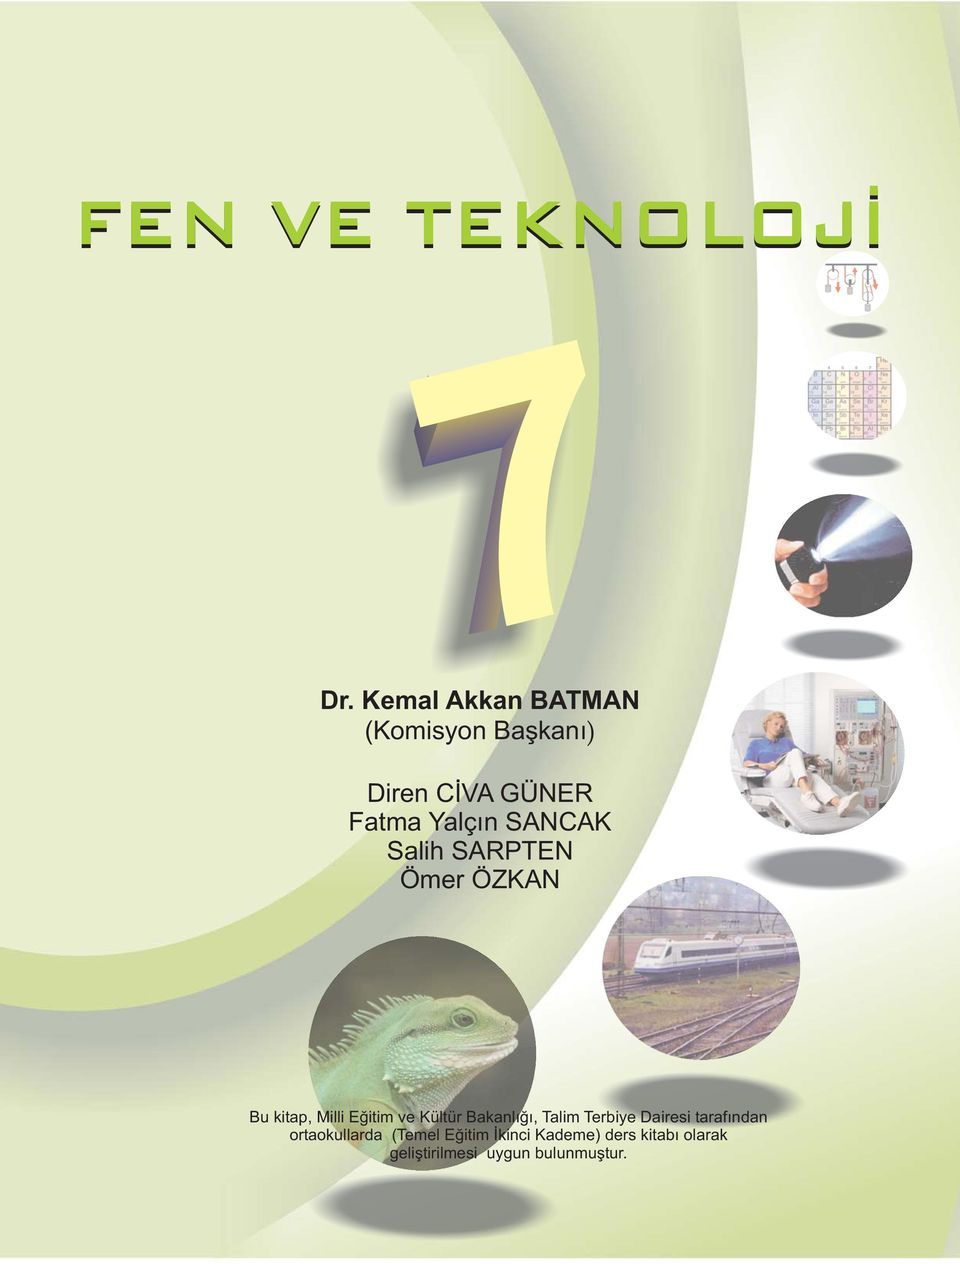 Kültür Bakanlığı, Talim Terbiye Dairesi tarafından ortaokullarda